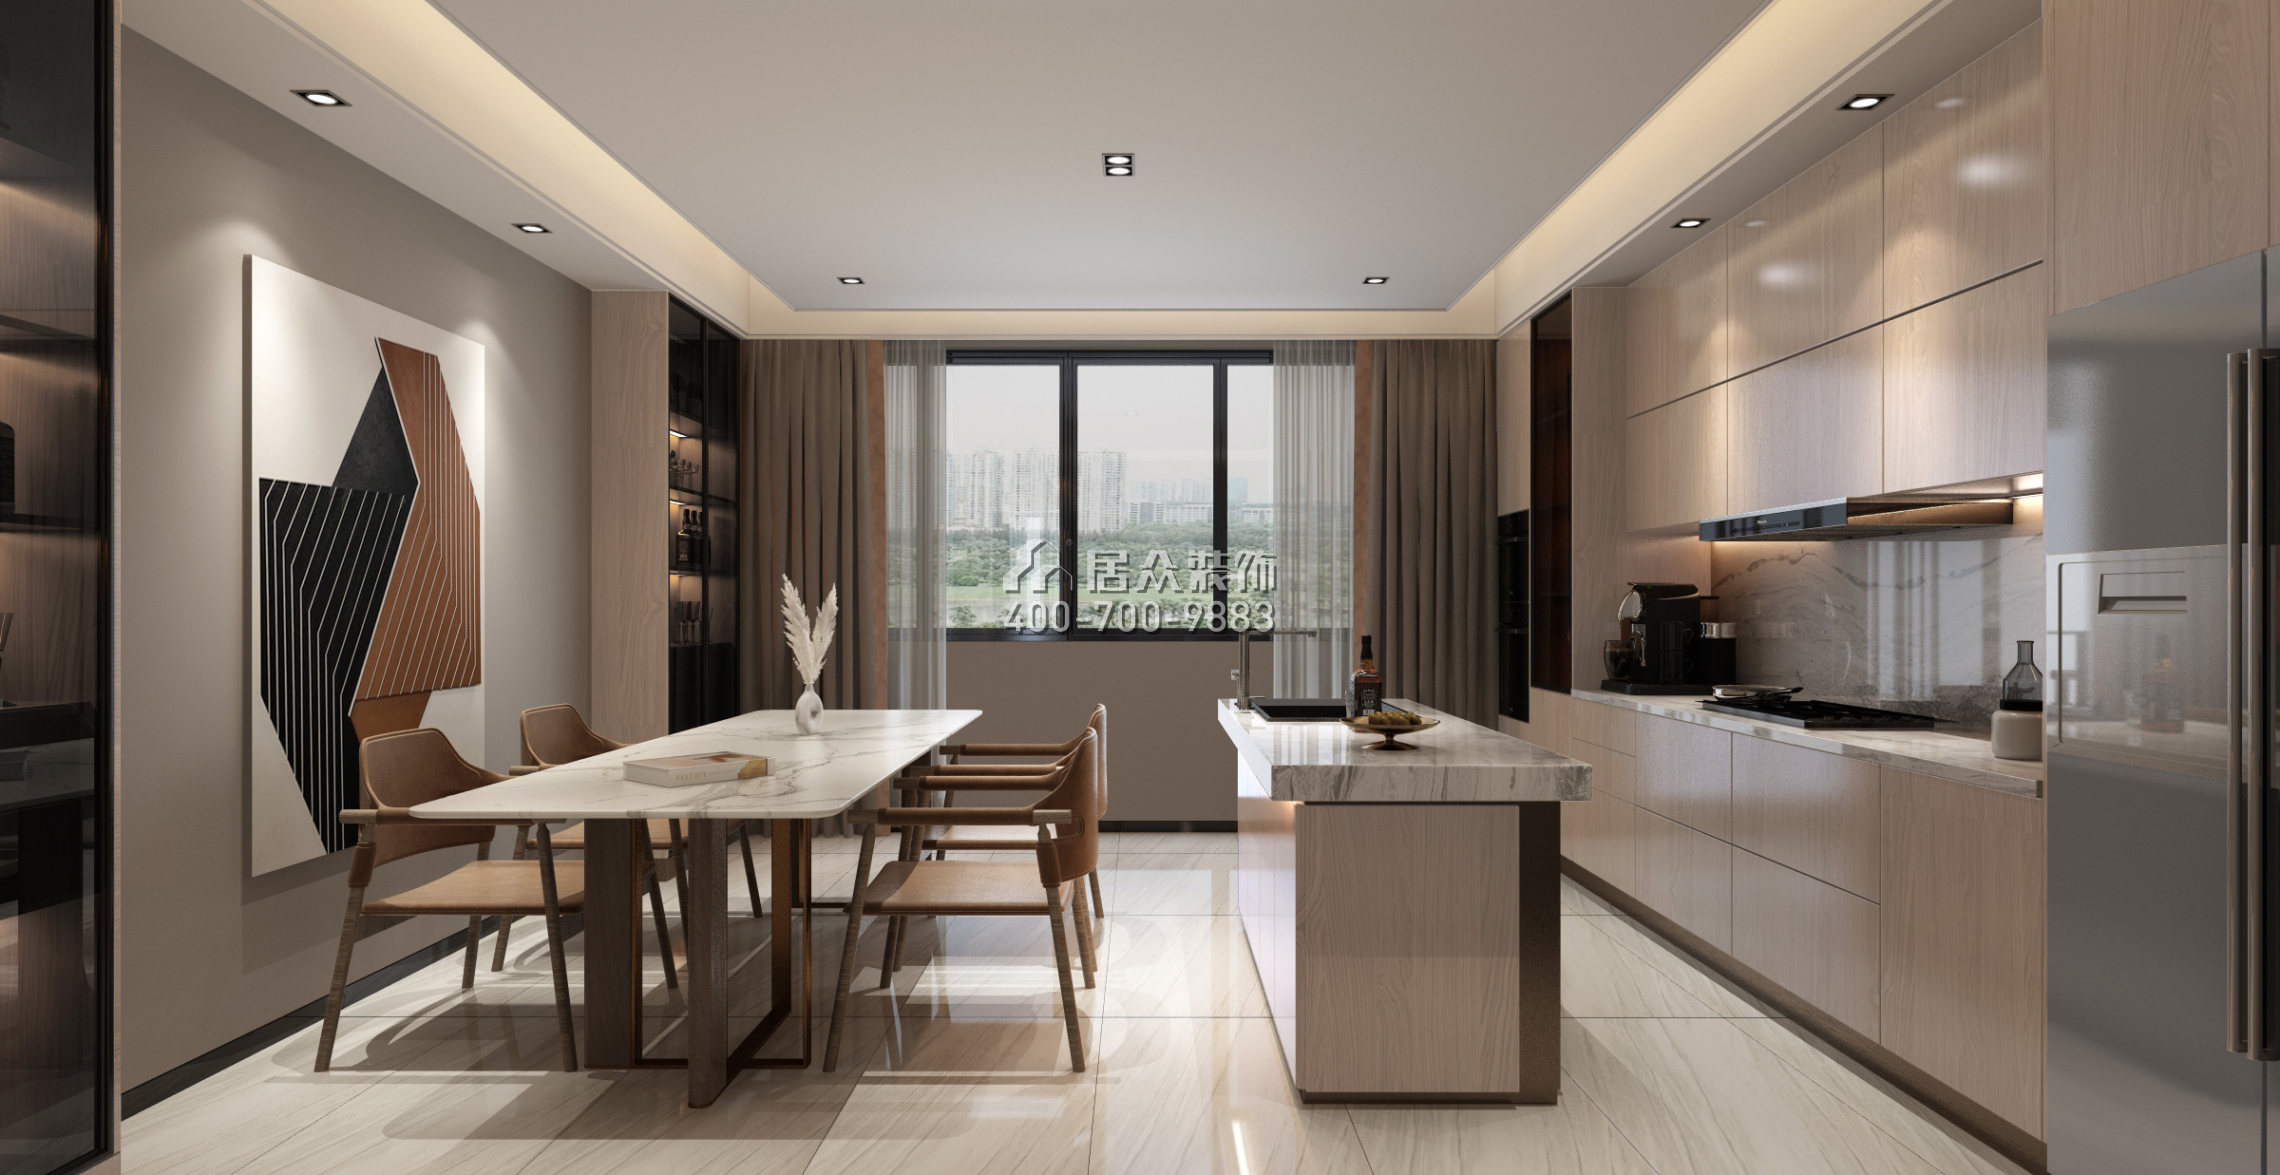 育才公寓163平方米其他风格平层户型厨房装修效果图